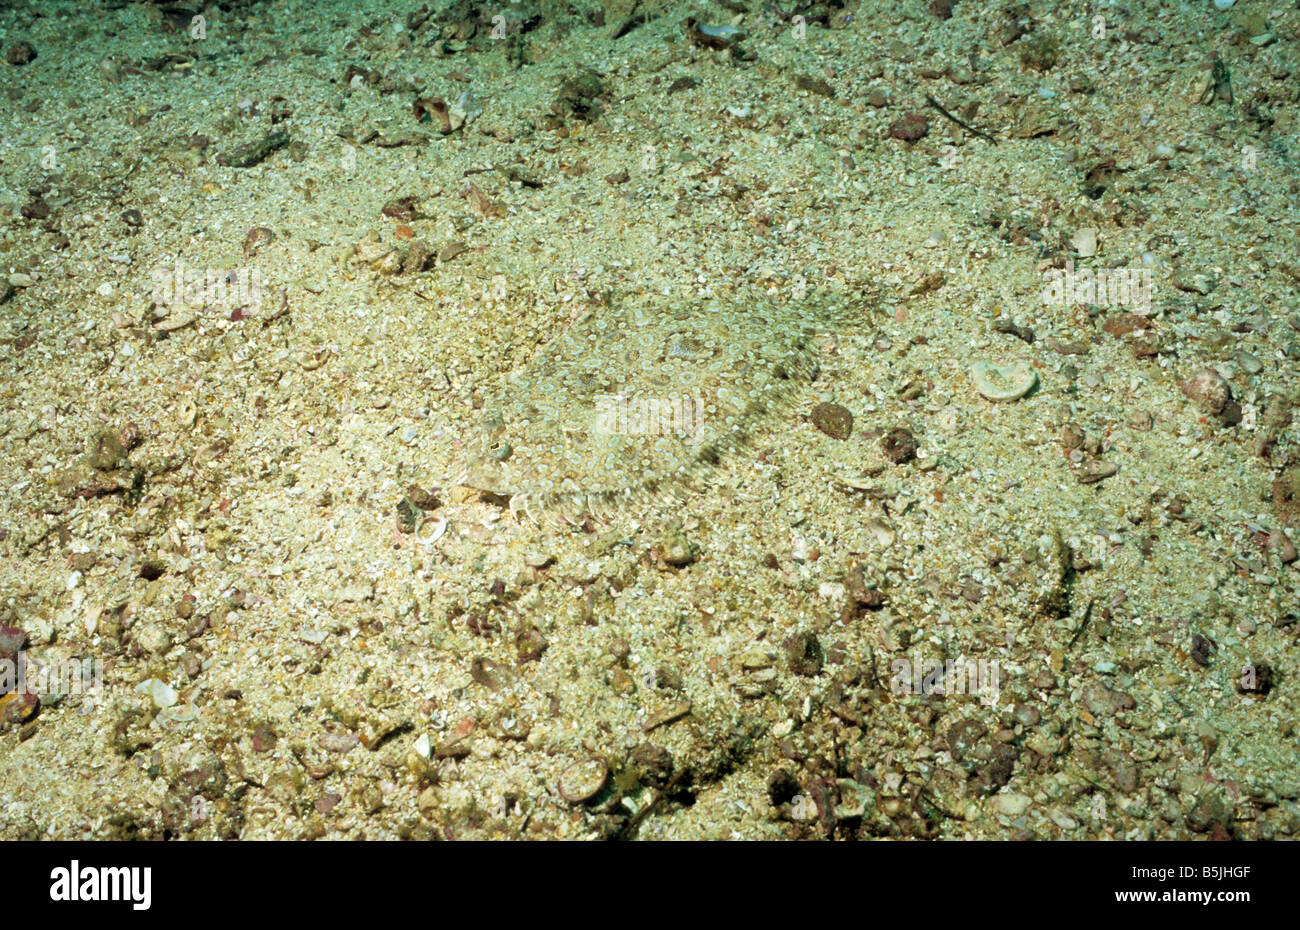 Mosè suola. Pesce piatto. Pardachirus Marmoratus. Sea life off Oman. La vita marina di Oman. Foto Stock